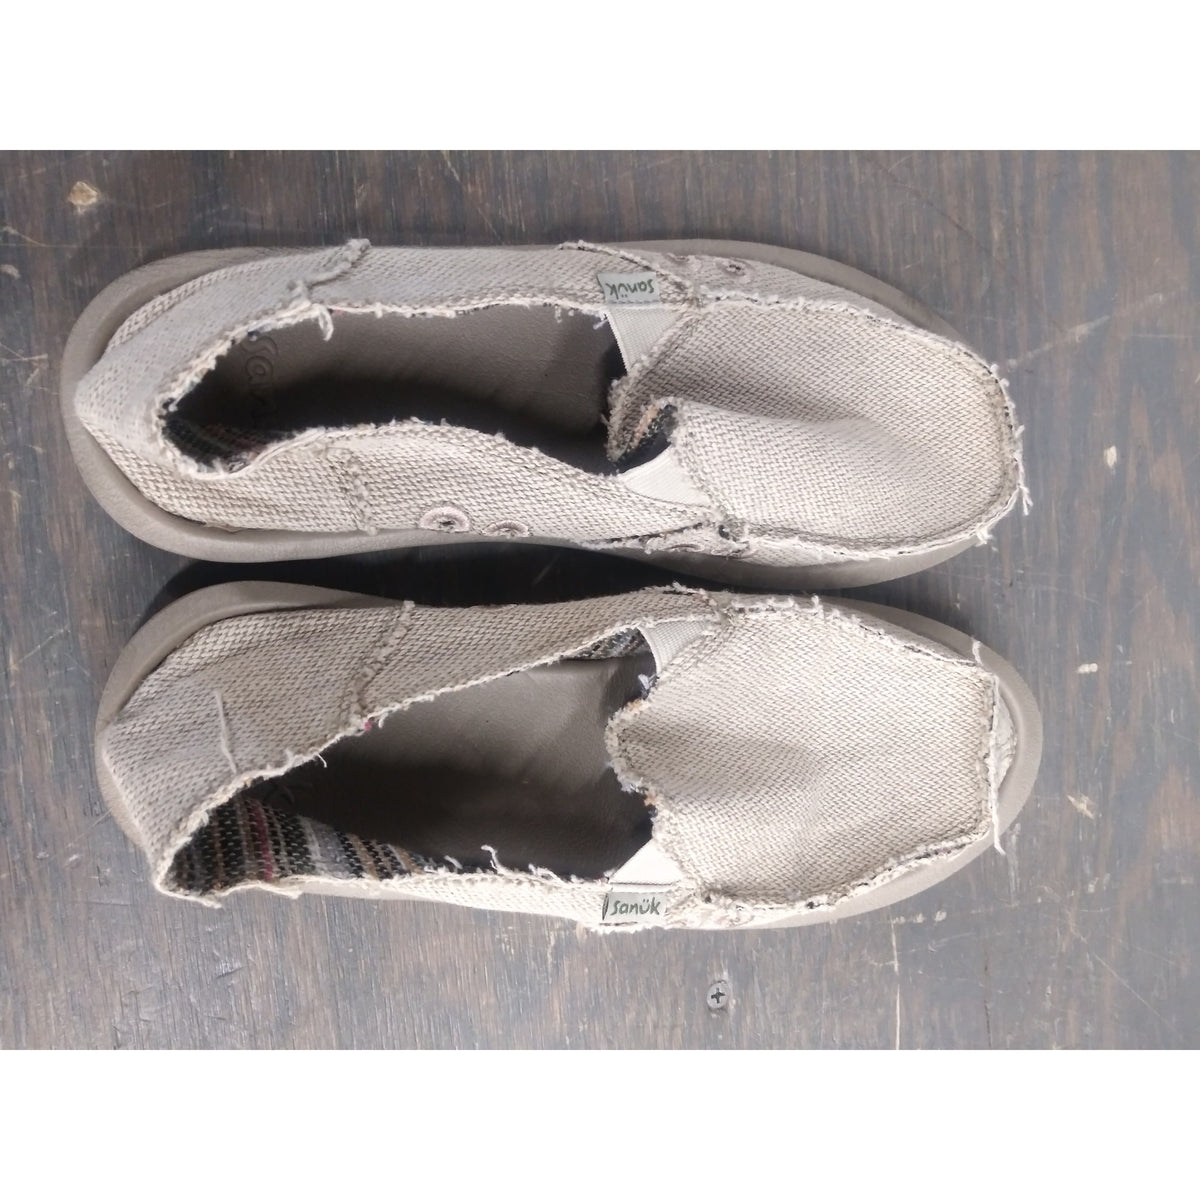 Used Sanuk Donna Hemp Shoes